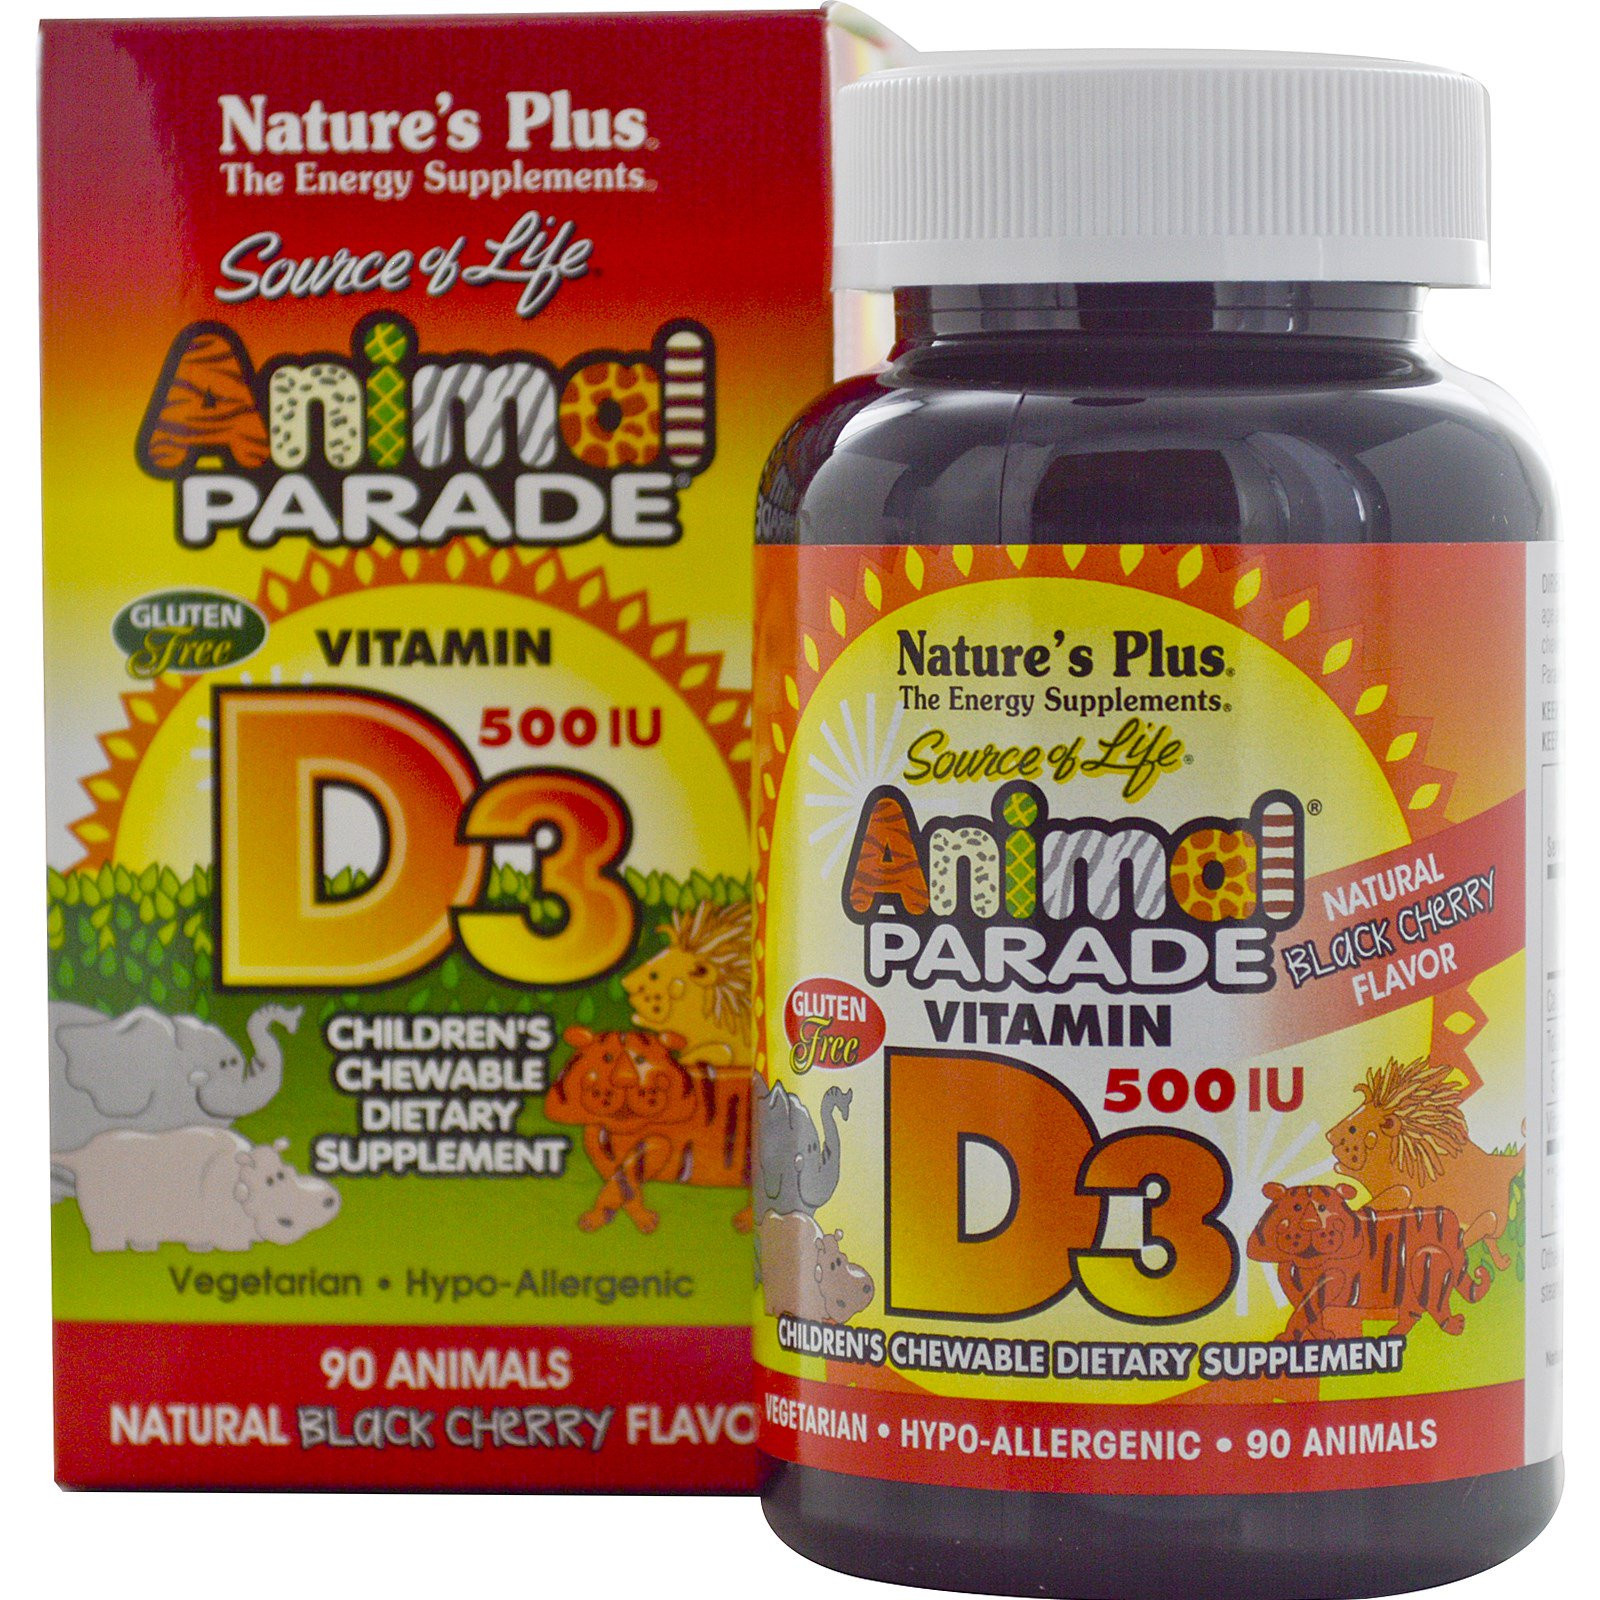 Vitamin D3, Natural Black Cherry Flavor, 500 IU (90 Animals) - Nature&apos;s Plus